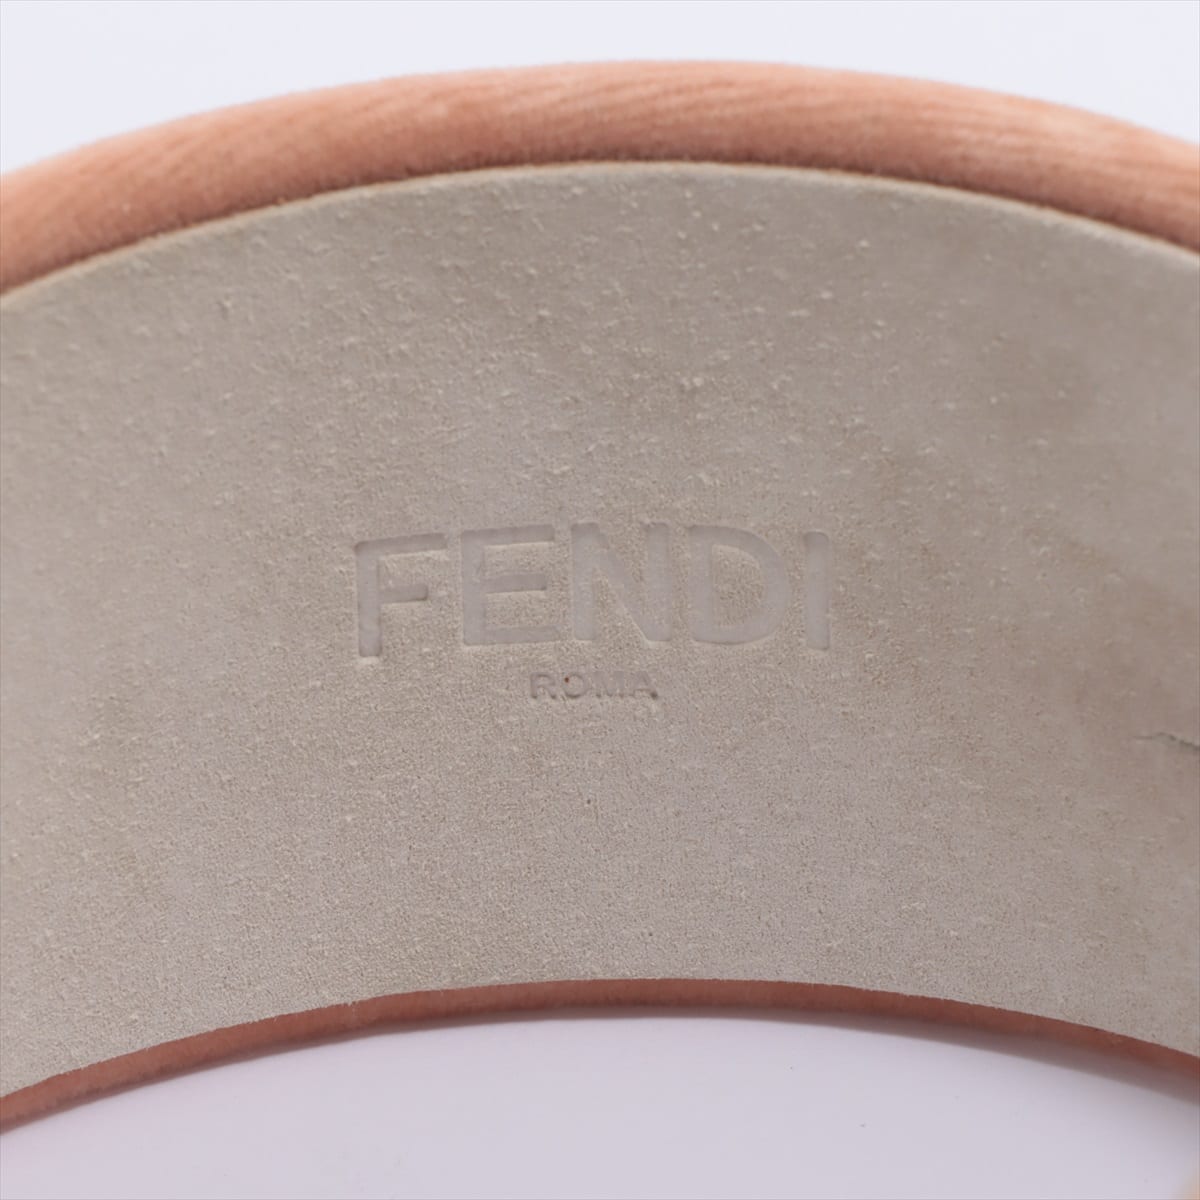 Fendi Logo Headband Velvet Pink